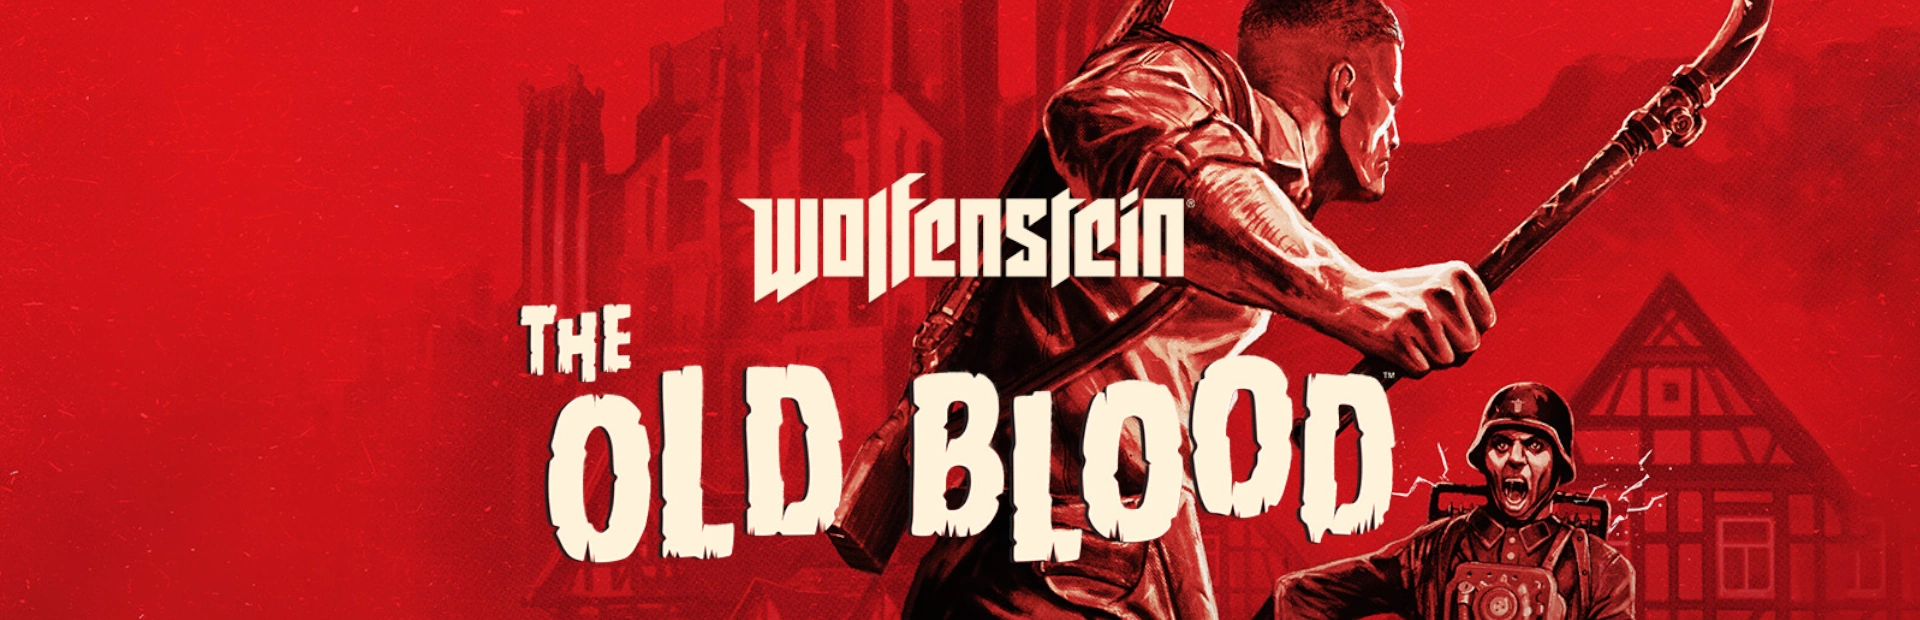 دانلود بازی Wolfenstein The Old Blood برای PC | گیمباتو